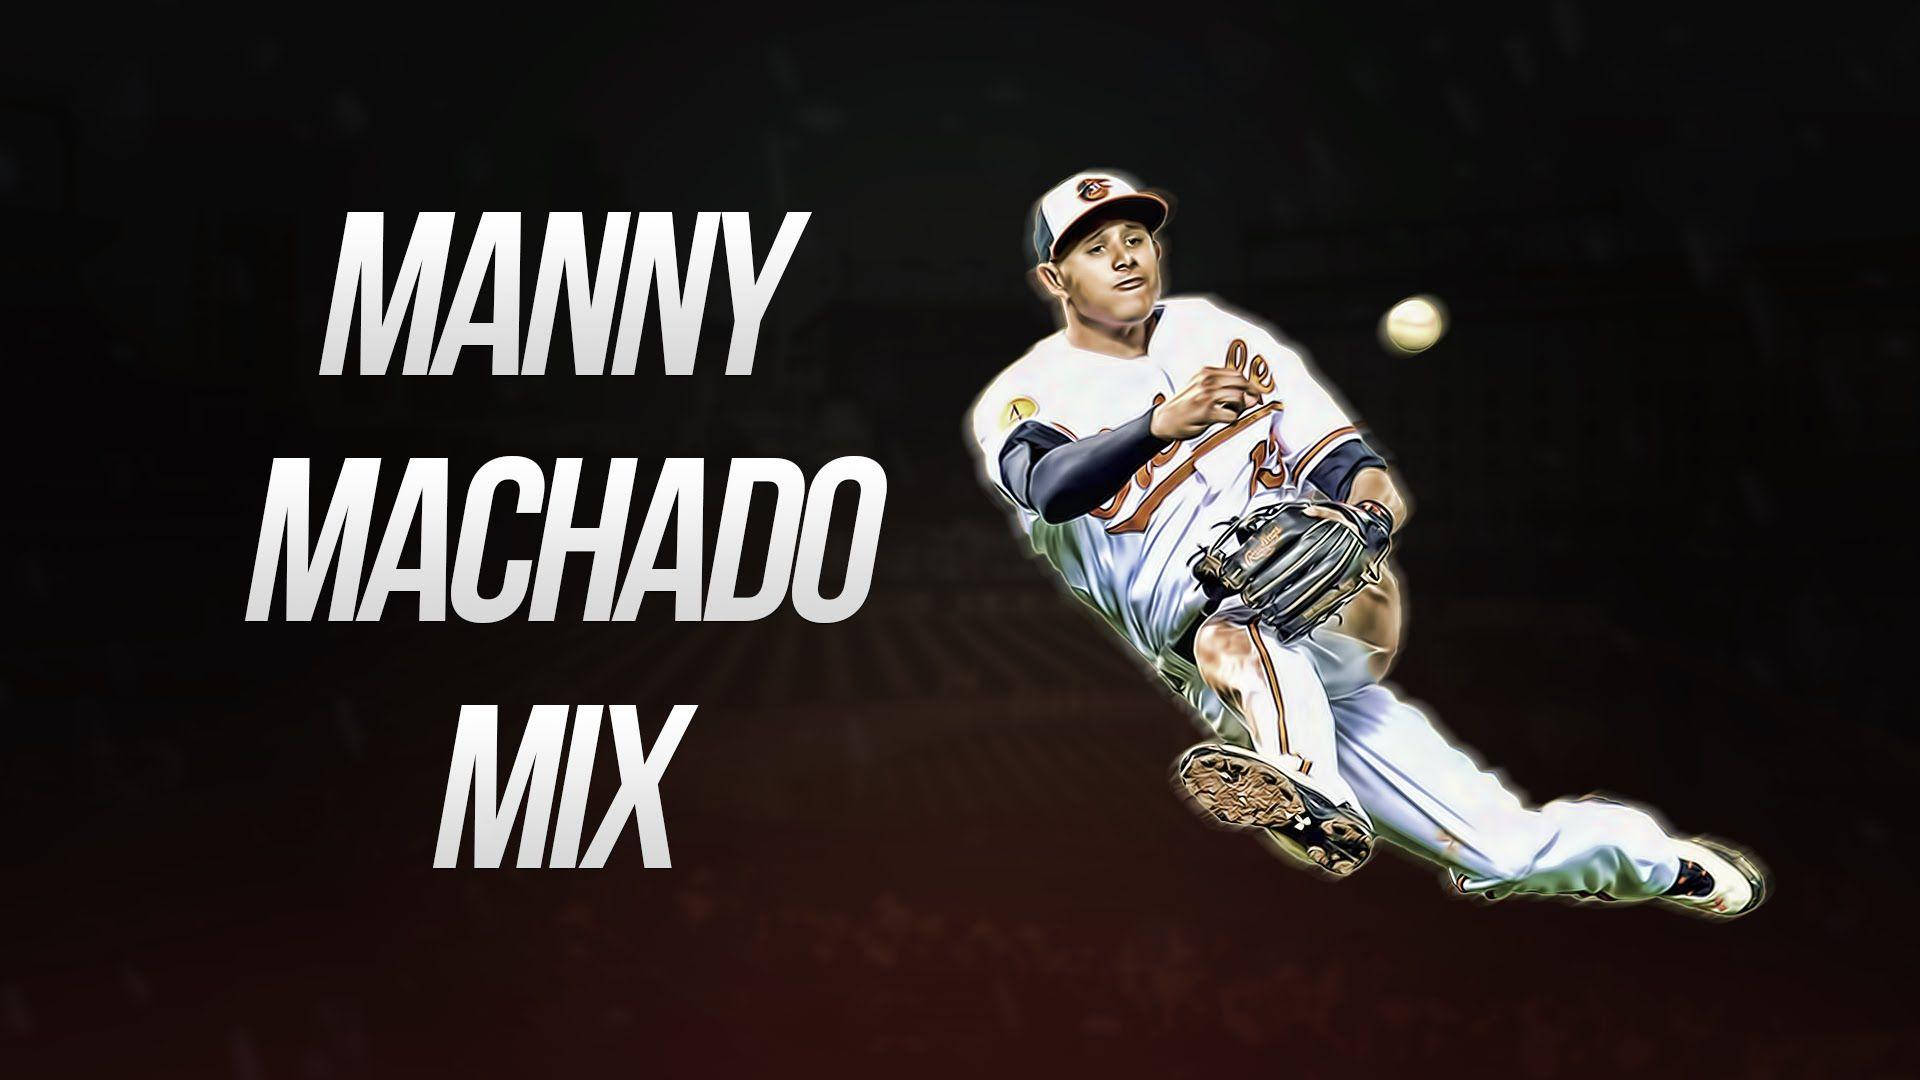 Mannymachado Mix (in German): Manny Machado Mix Wallpaper